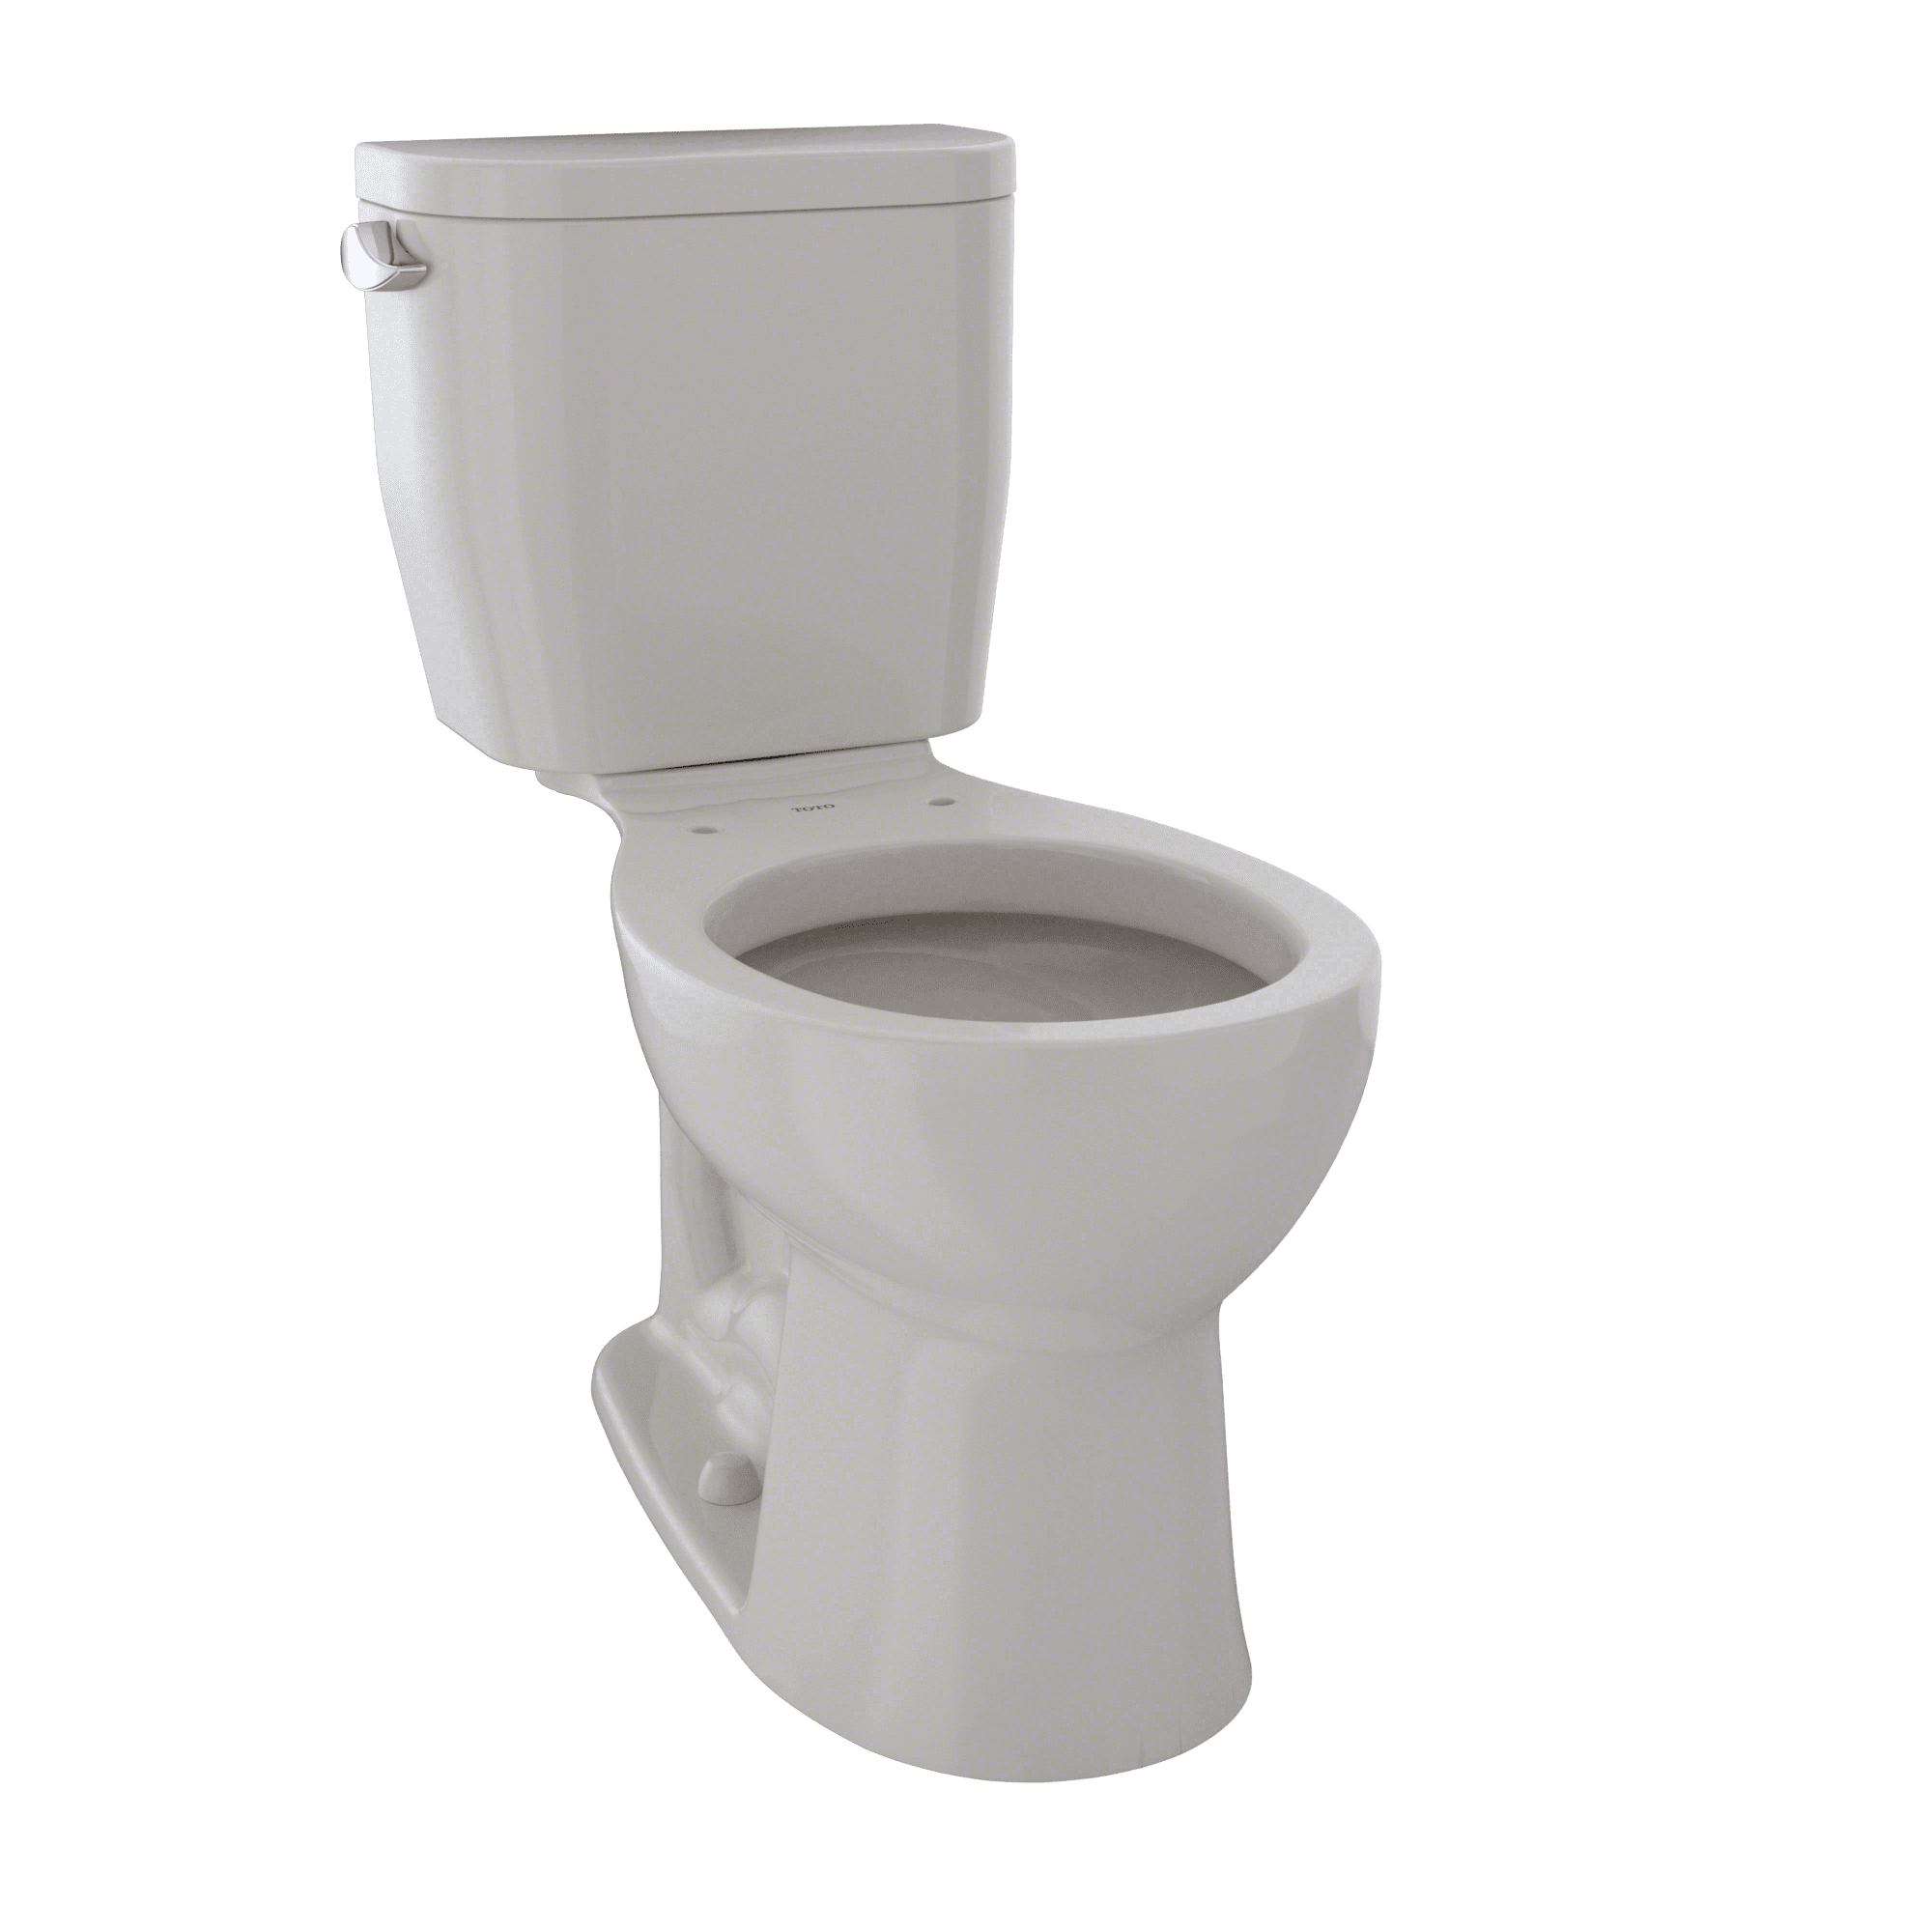 Cst243ef12 Entrada 1.28 Gpf Single Flush Round Toilet, Sedona Beige